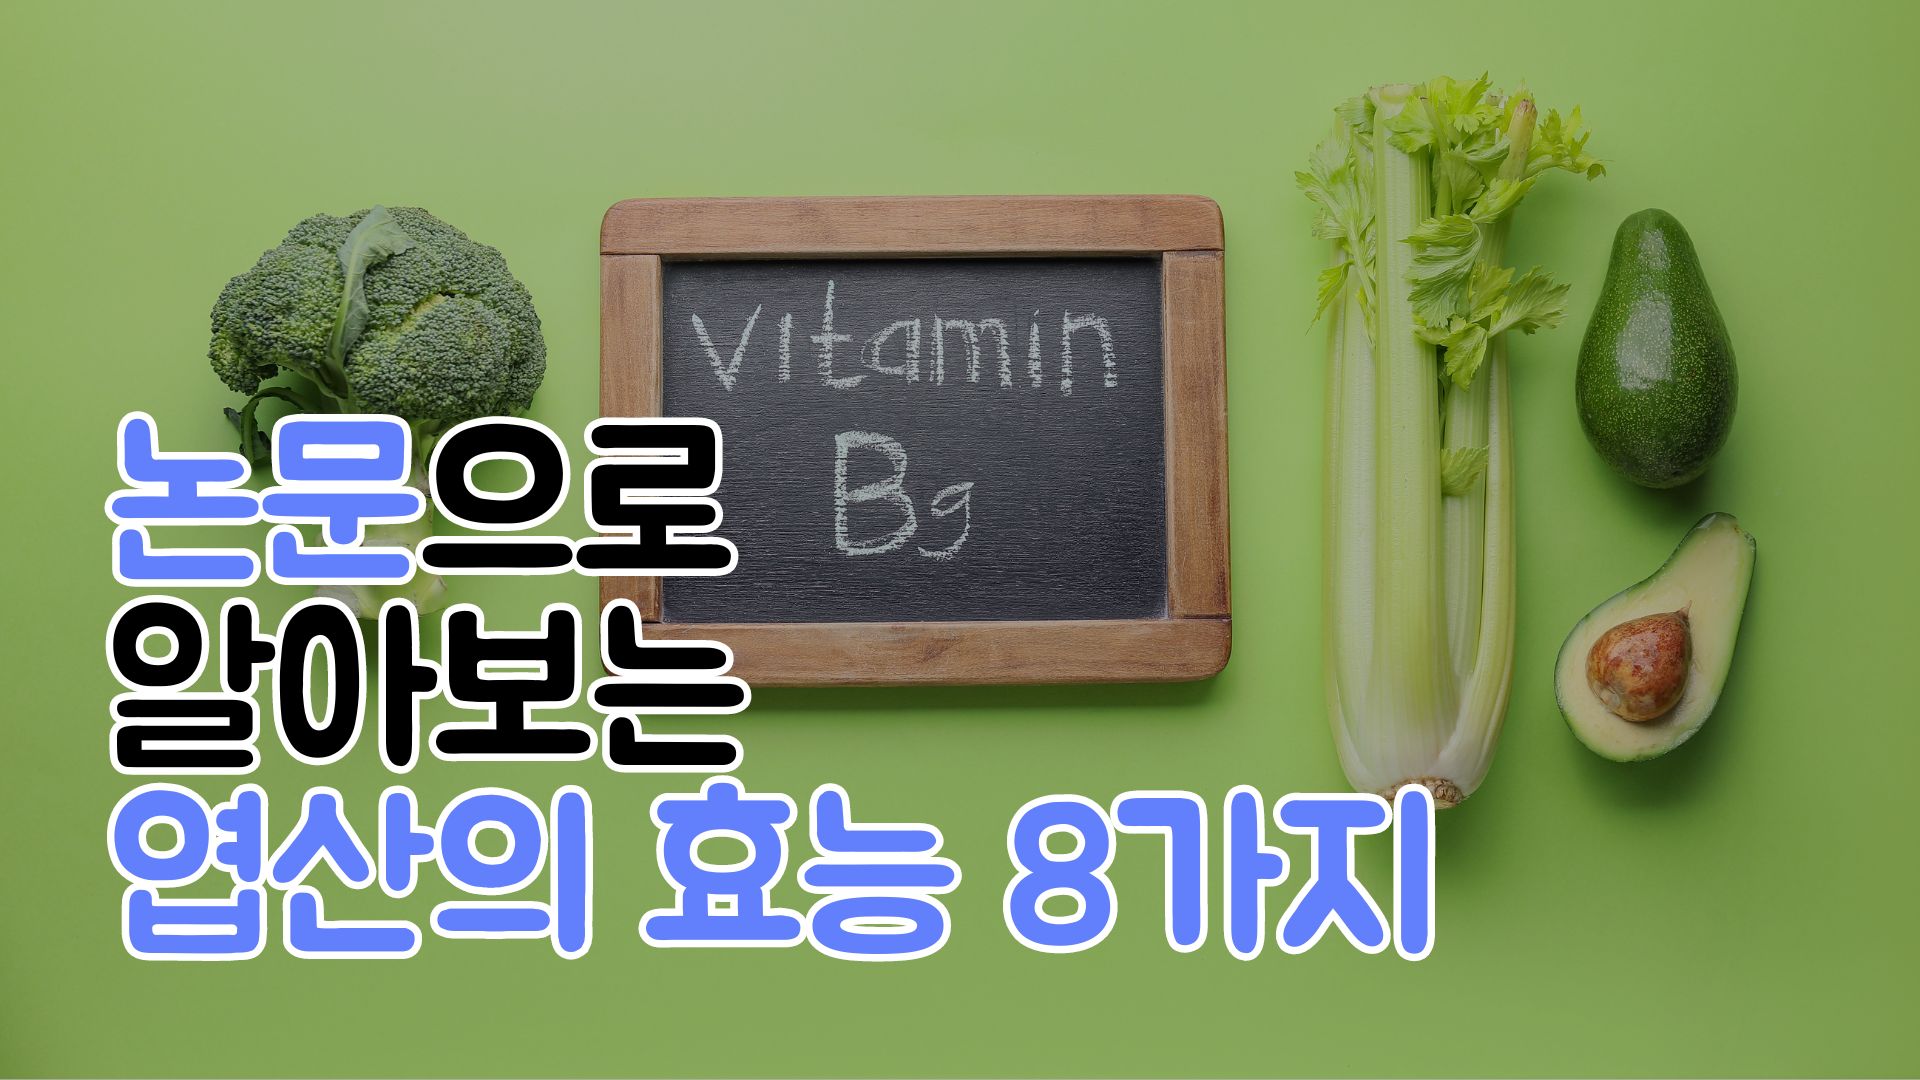 논문으로 알아보는 비타민 b9 엽산 효능 8가지